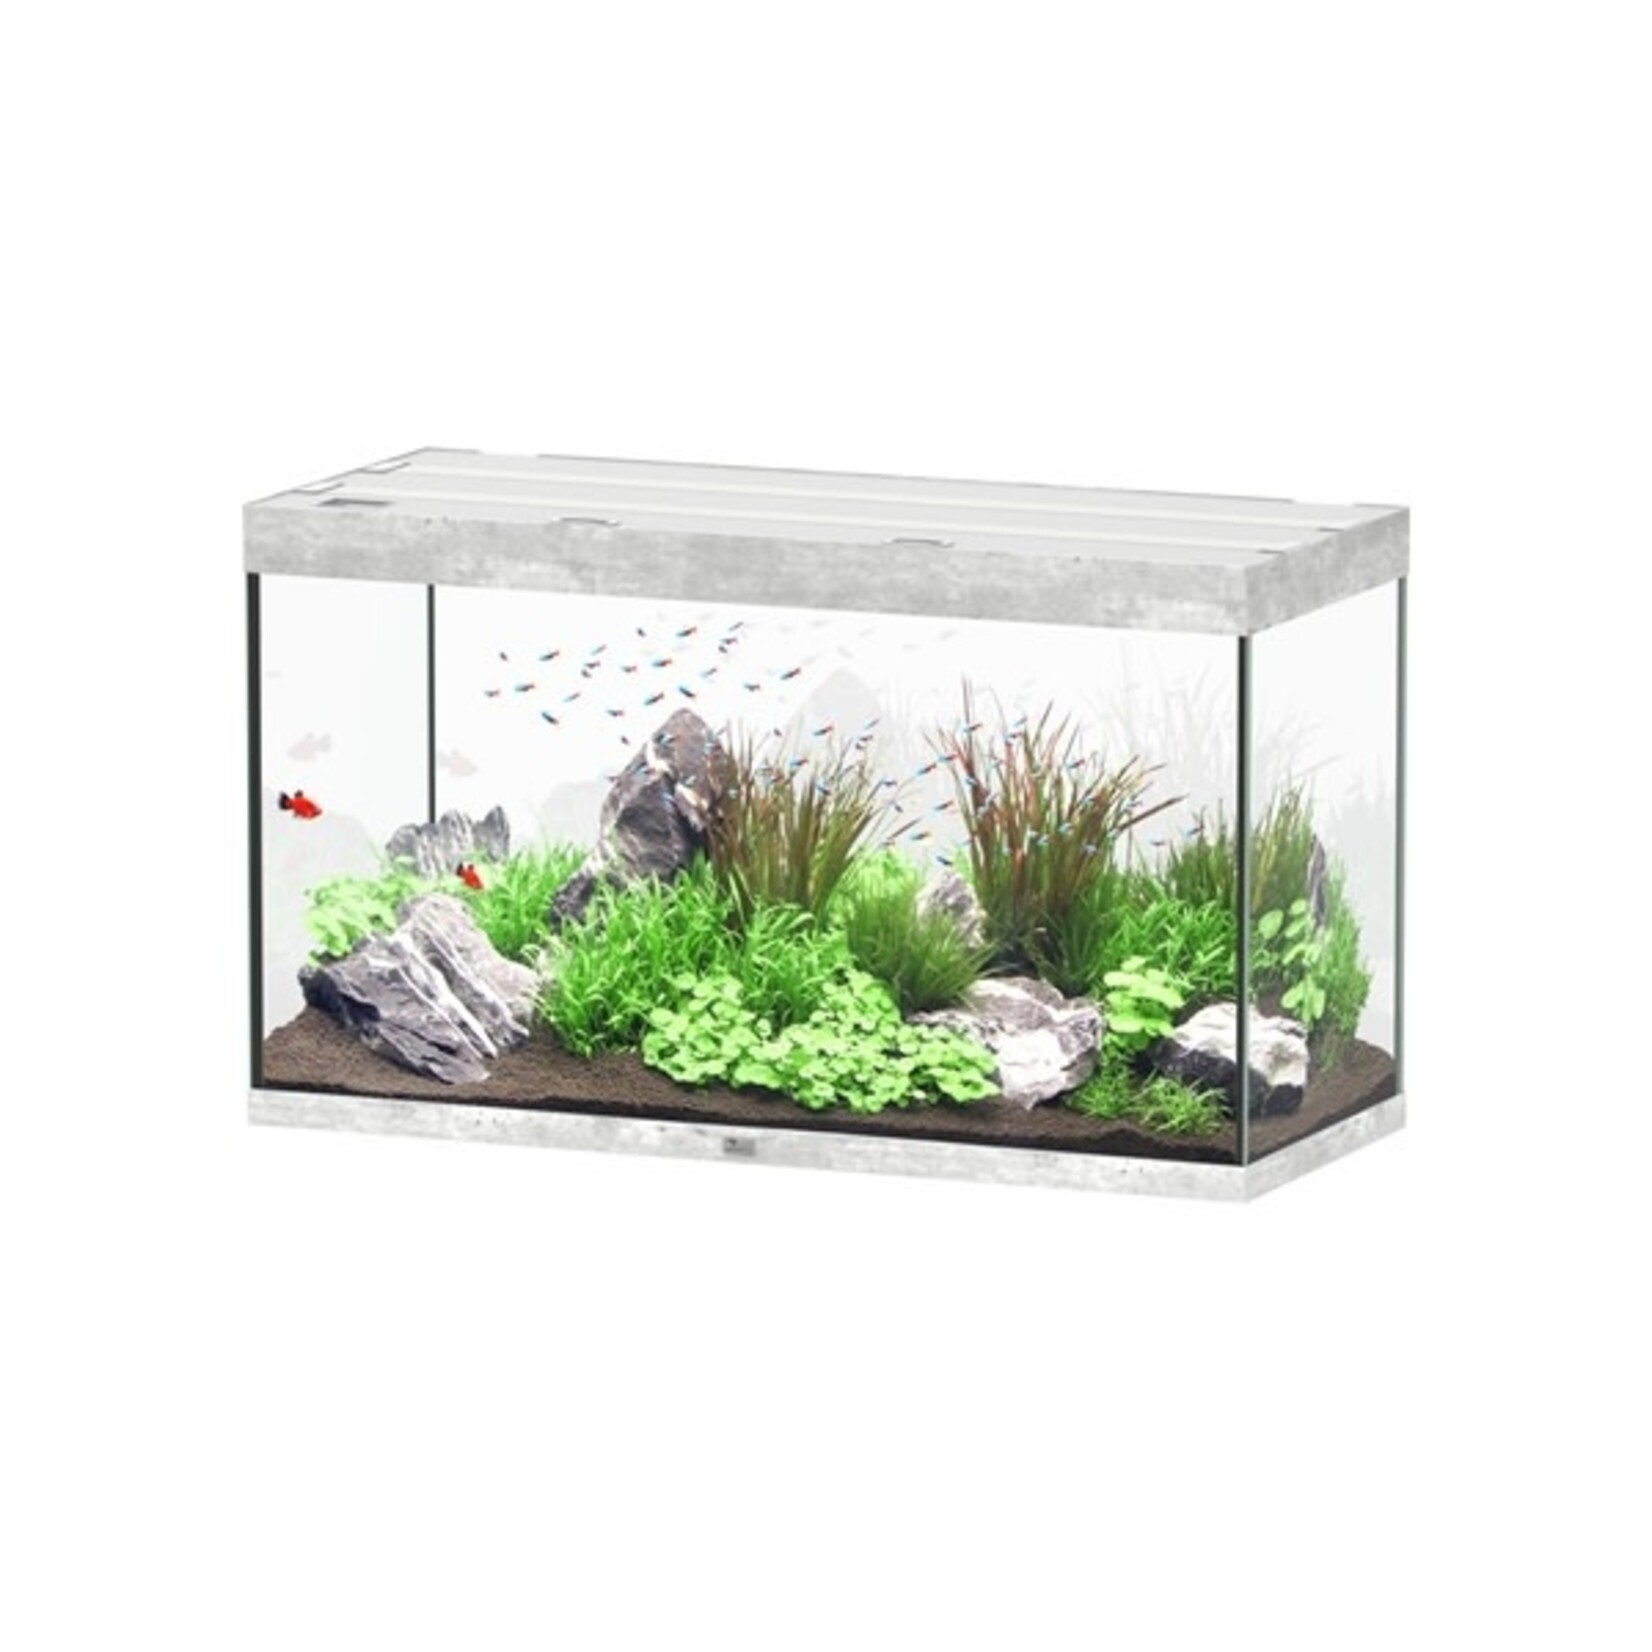 Aquatlantis Aquarium sublime 120x50 cm beton-059